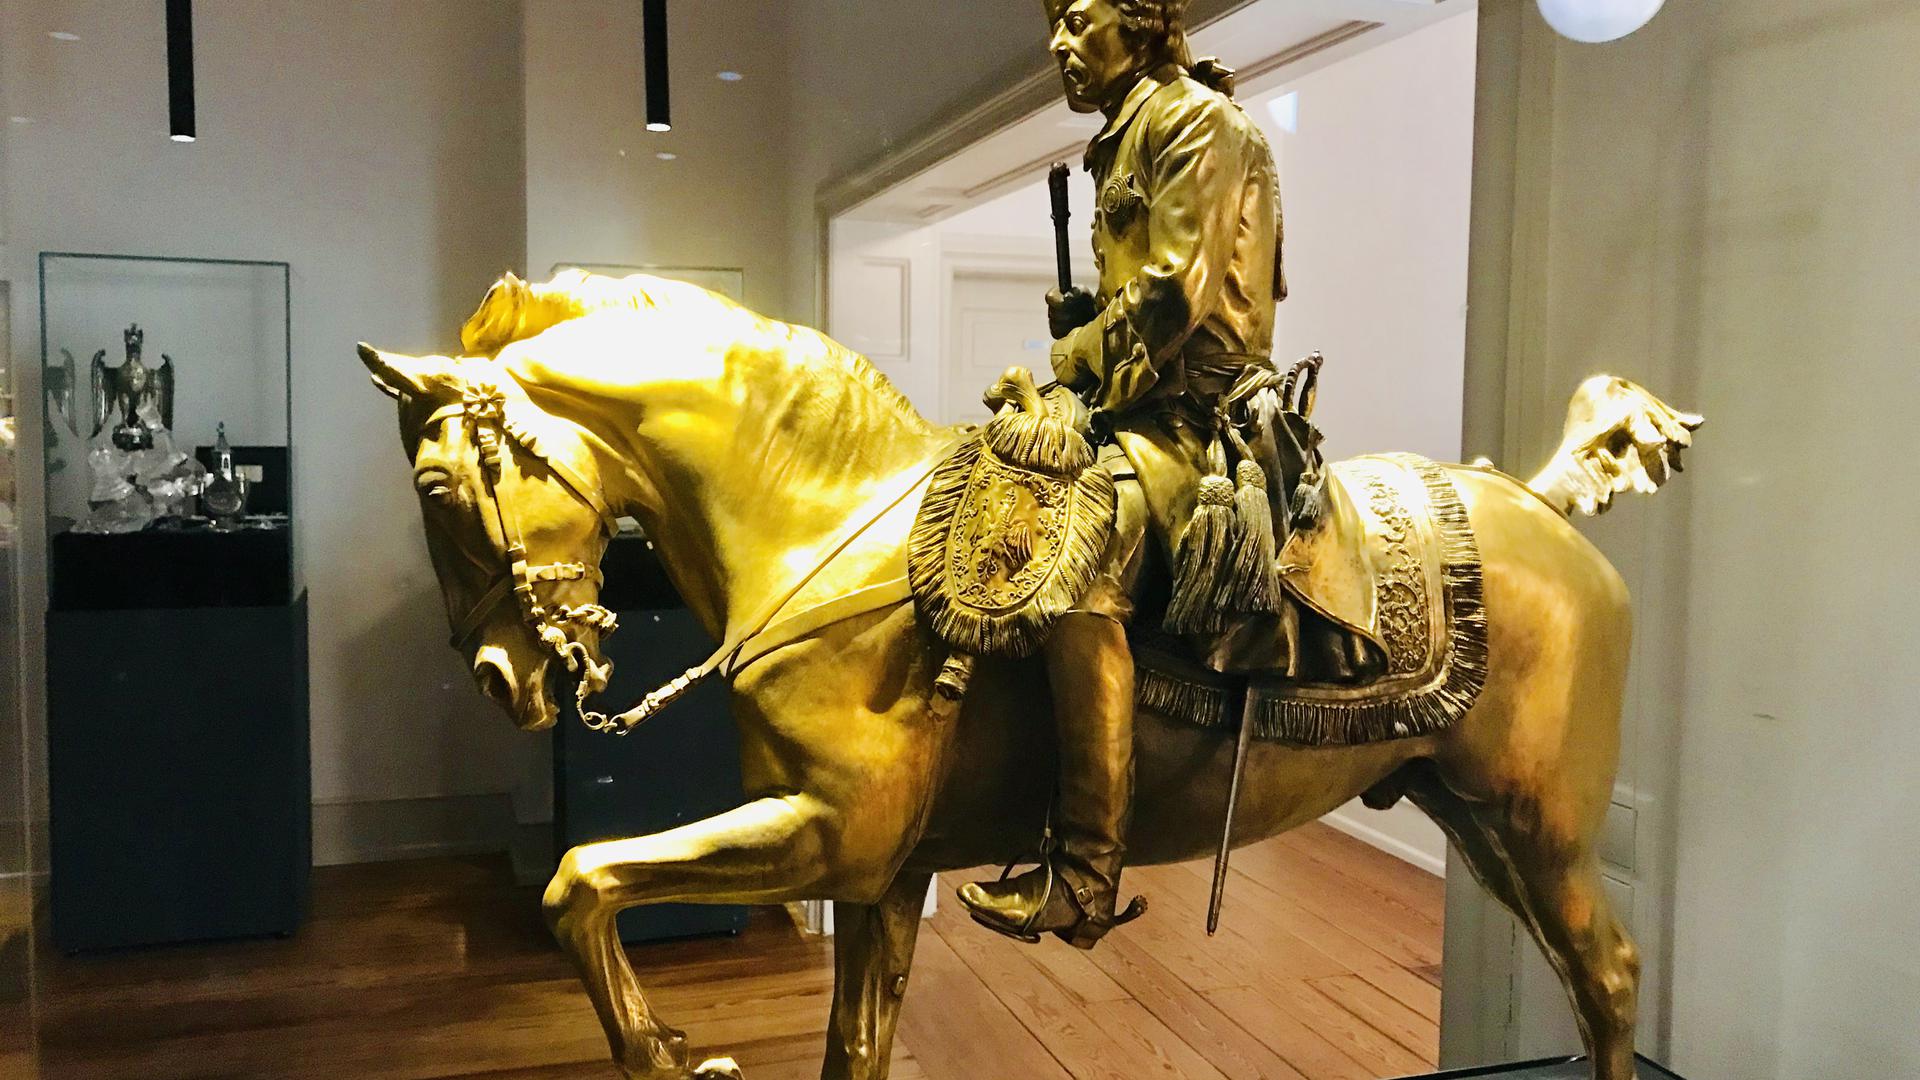 Kiloweise Silber, das vergoldet wurde: Eine Reiterstatue des Alten Fritz. Das Objekt wiegt 46 Kilo.